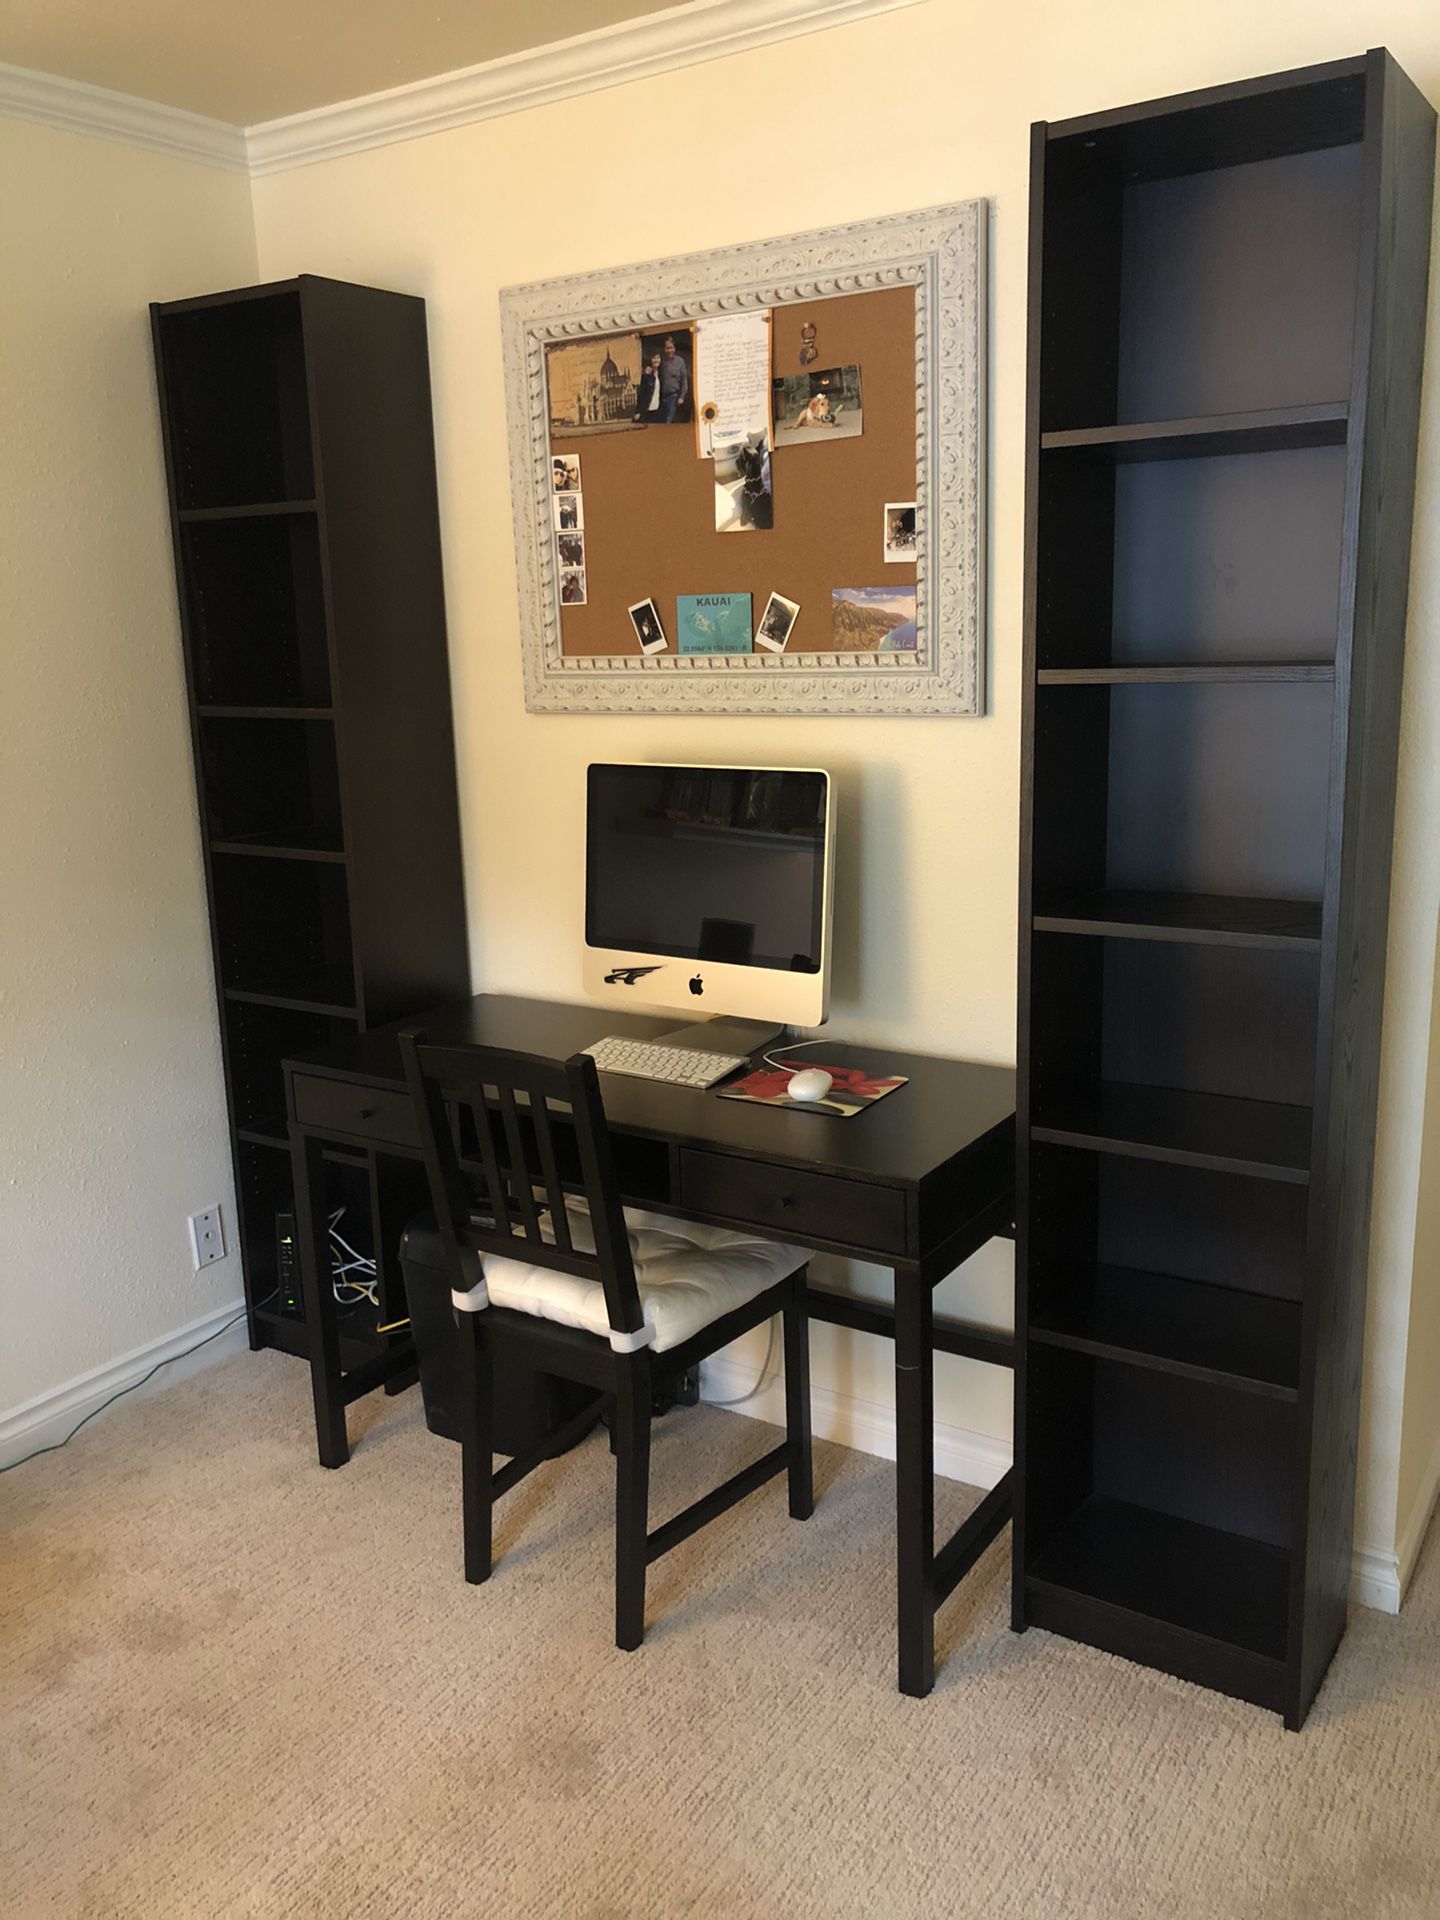 Desk with bookshelves